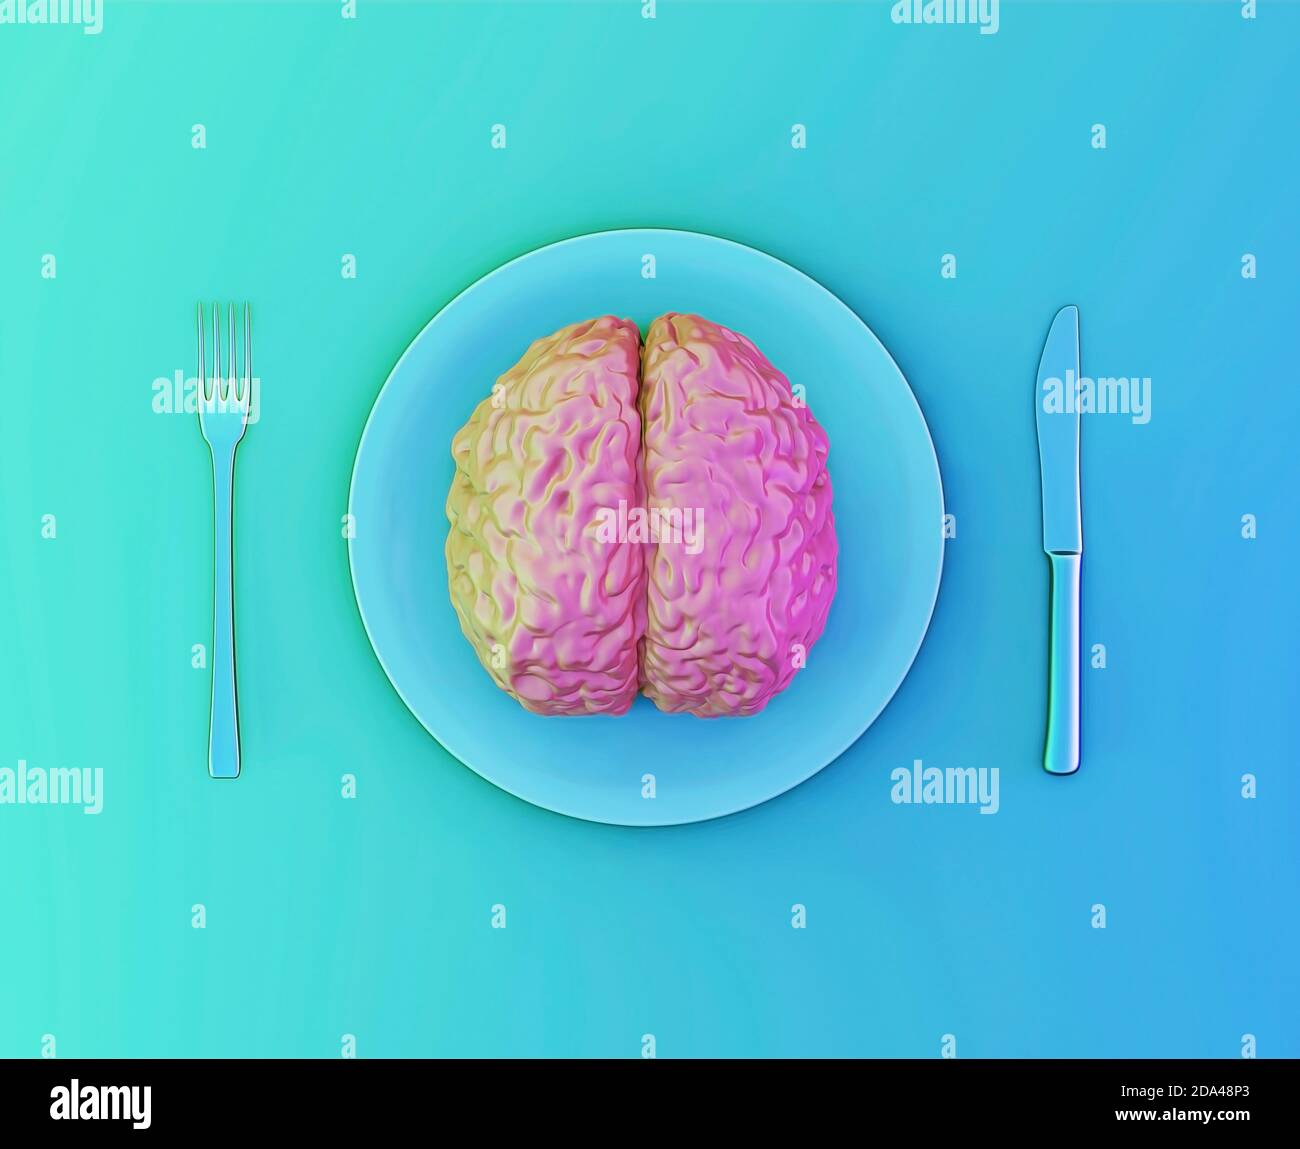 Das menschliche Gehirn als Nahrung, Missbrauch, Liebesbeziehung oder Brainstorming Konzept. Menschliches Gehirn auf einem Teller mit Gabel und Messer, 3d-Illustration Stockfoto